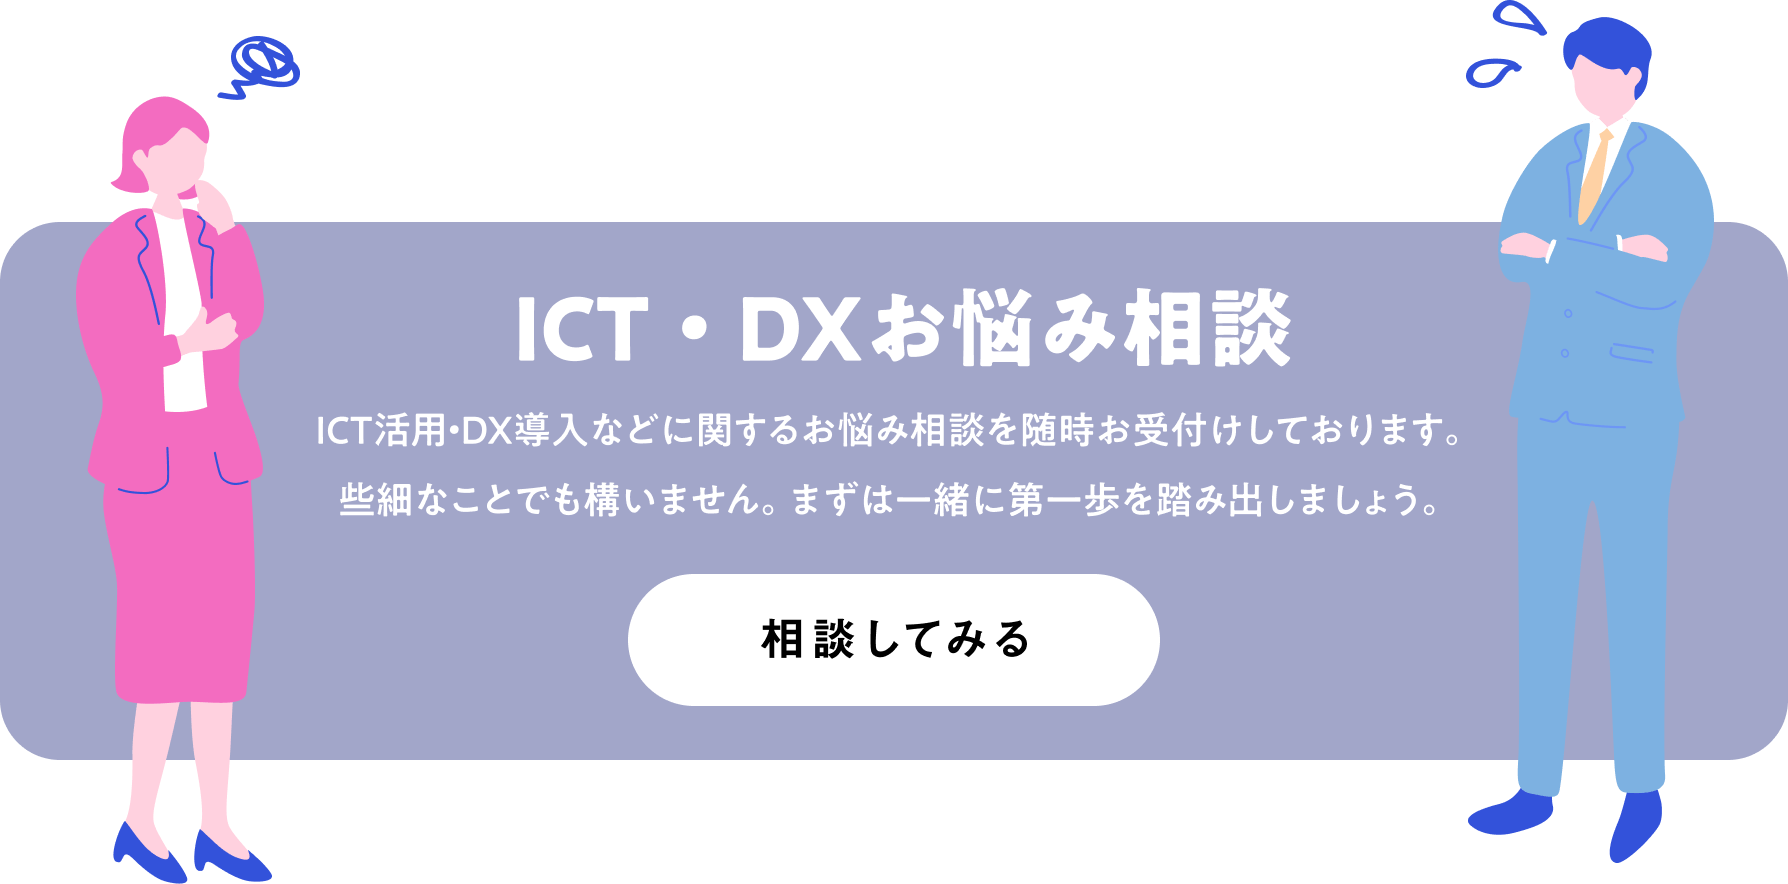 ICT・DXお悩み相談 ICT活用・DX導入などに関するお悩み相談を随時お受付けしております。些細なことでも構いません。まずは一緒に第一歩を踏み出しましょう。